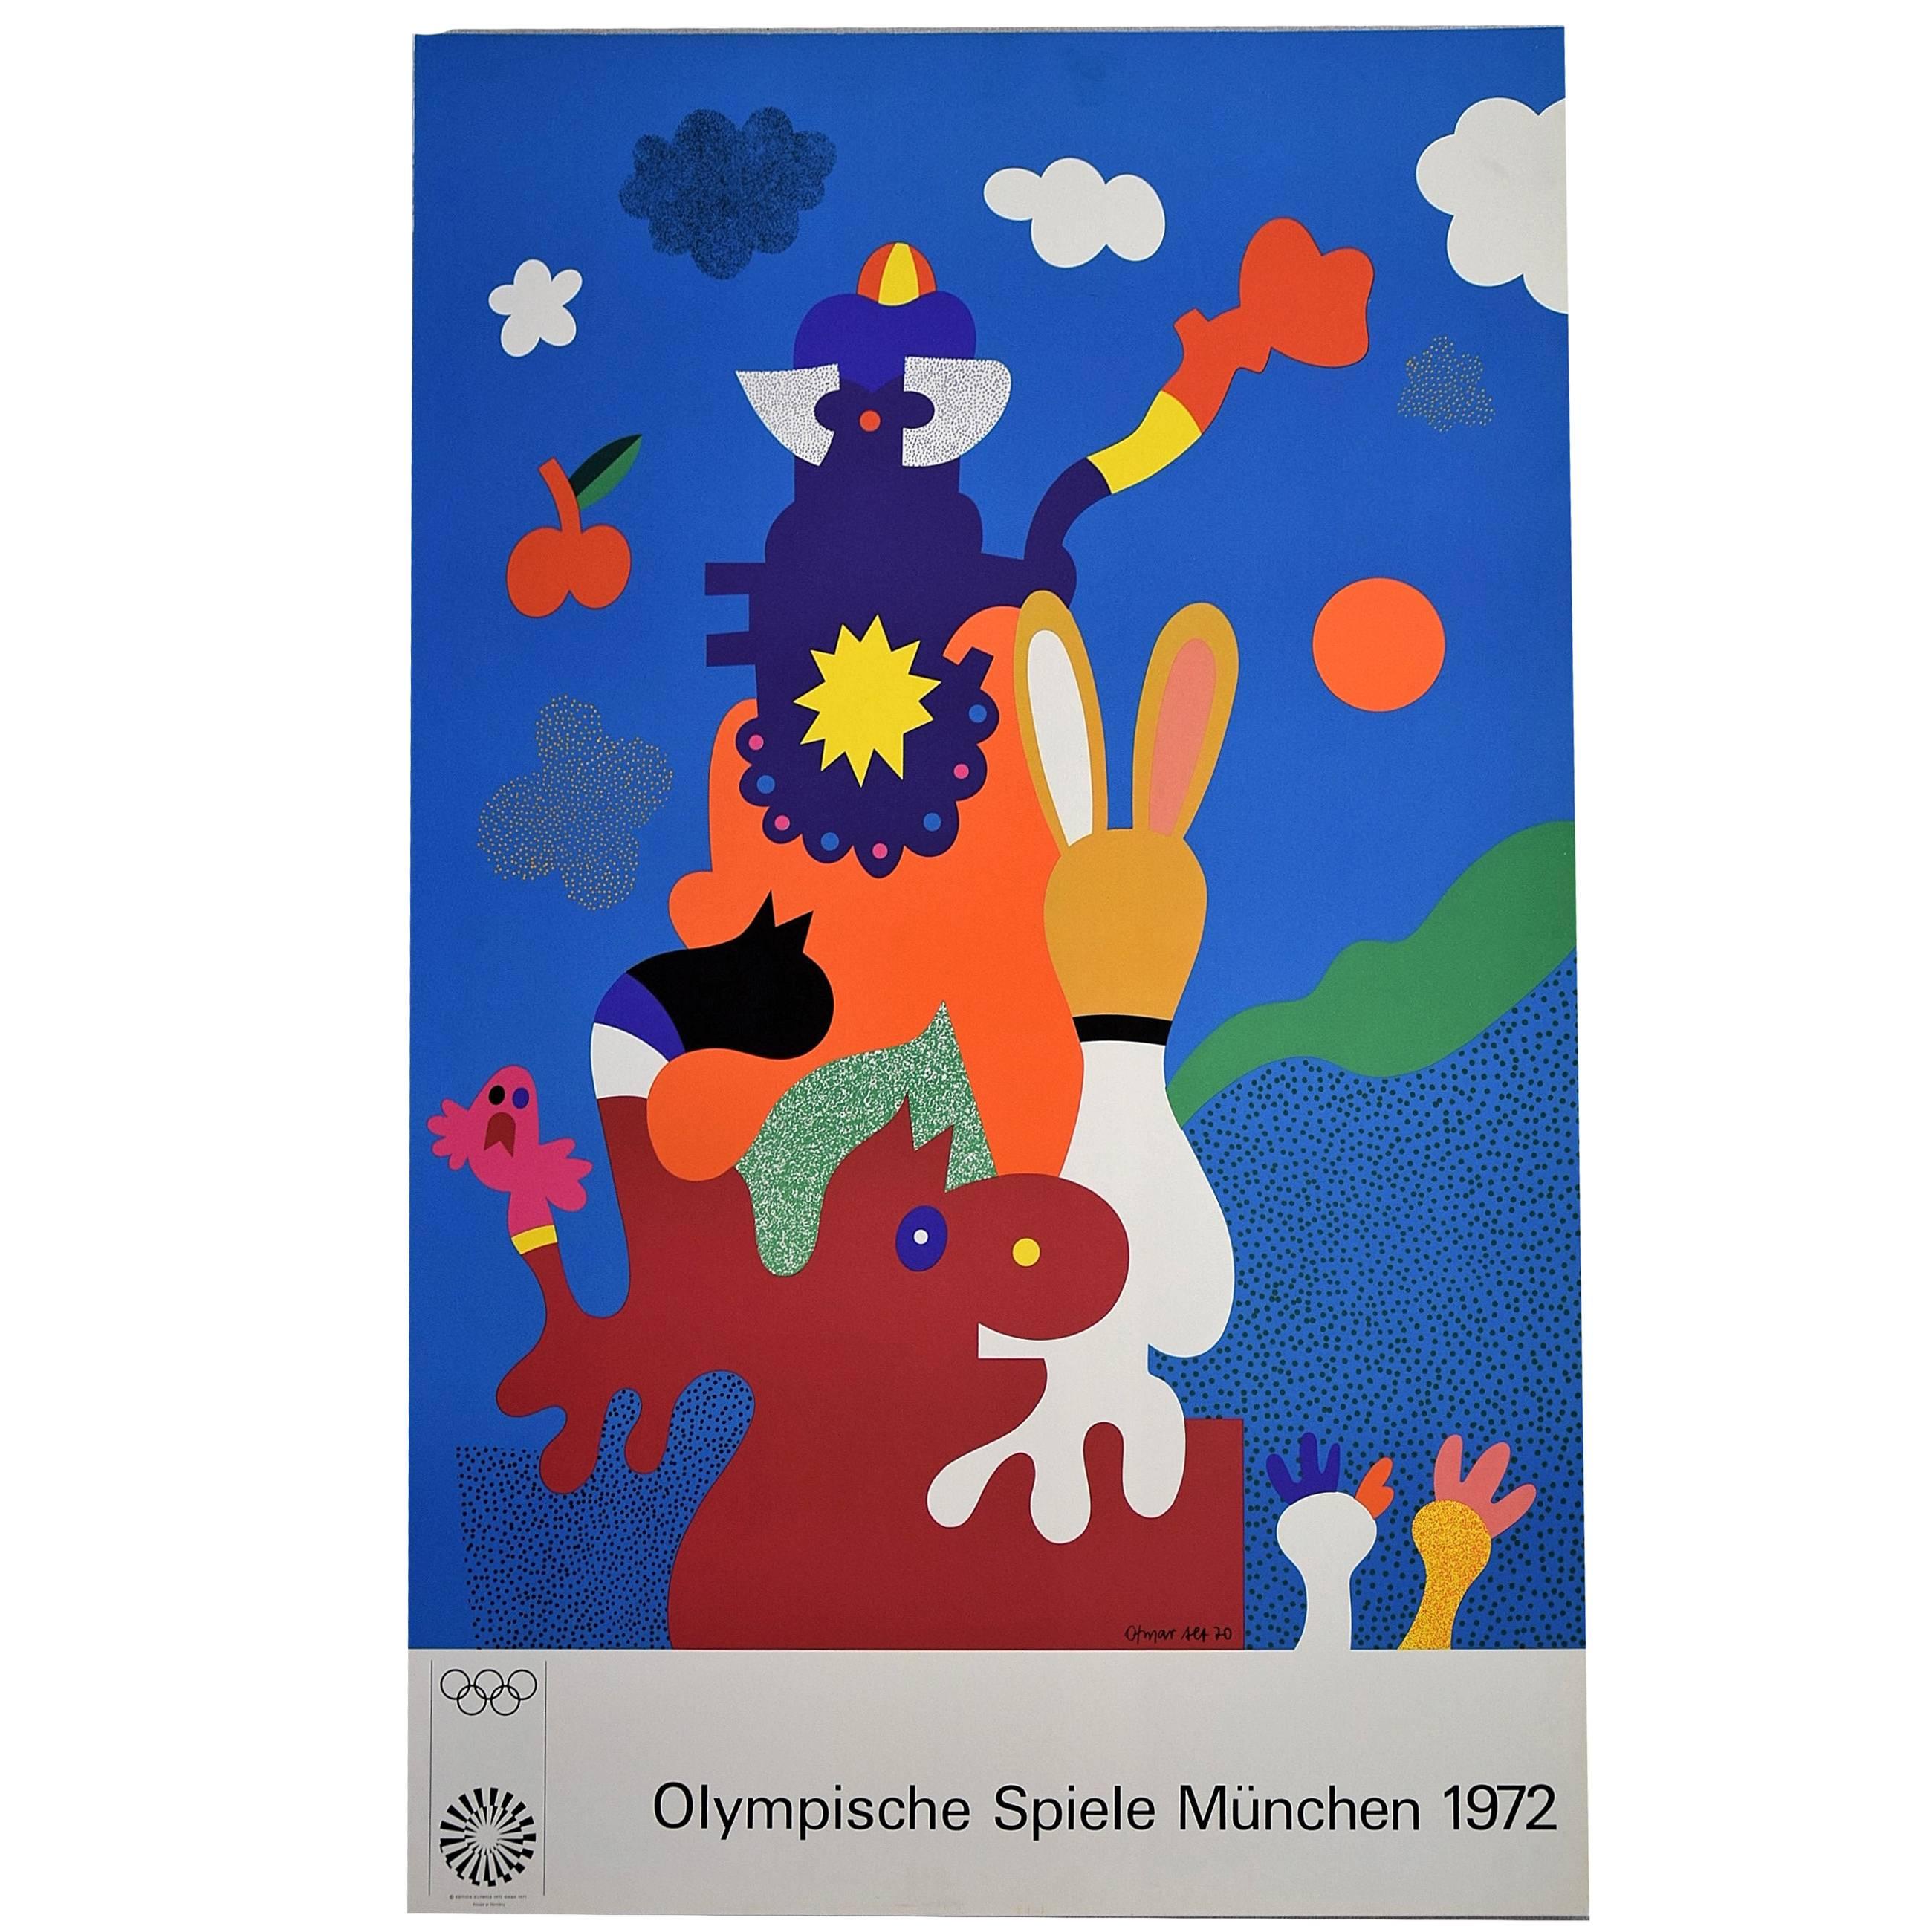 Otmar Alt, Munich Olympic Games, 1972